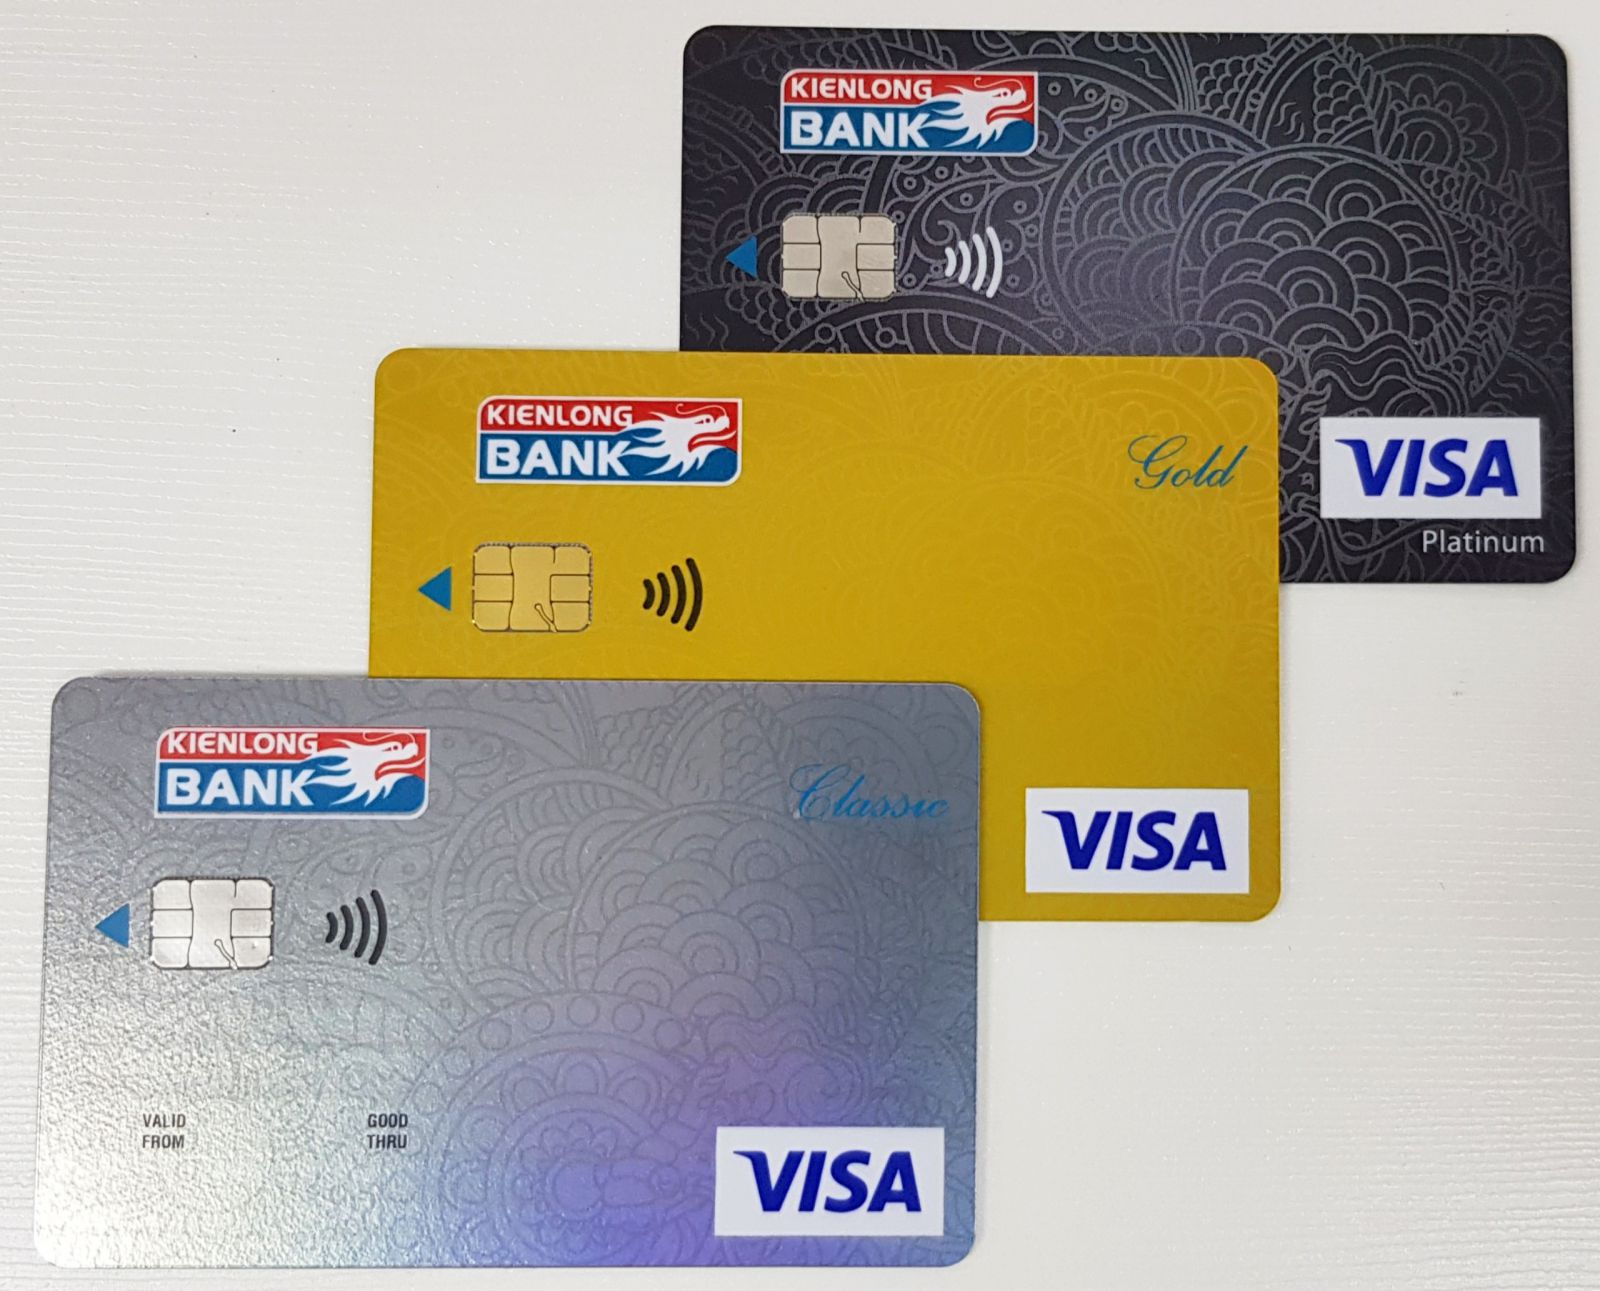 Kienlongbank triển khai tính năng thanh toán không tiếp xúc cho thẻ tín dụng quốc tế Kienlongbank Visa, gồm ba hạng thẻ: Classic, Gold và Platinum. 